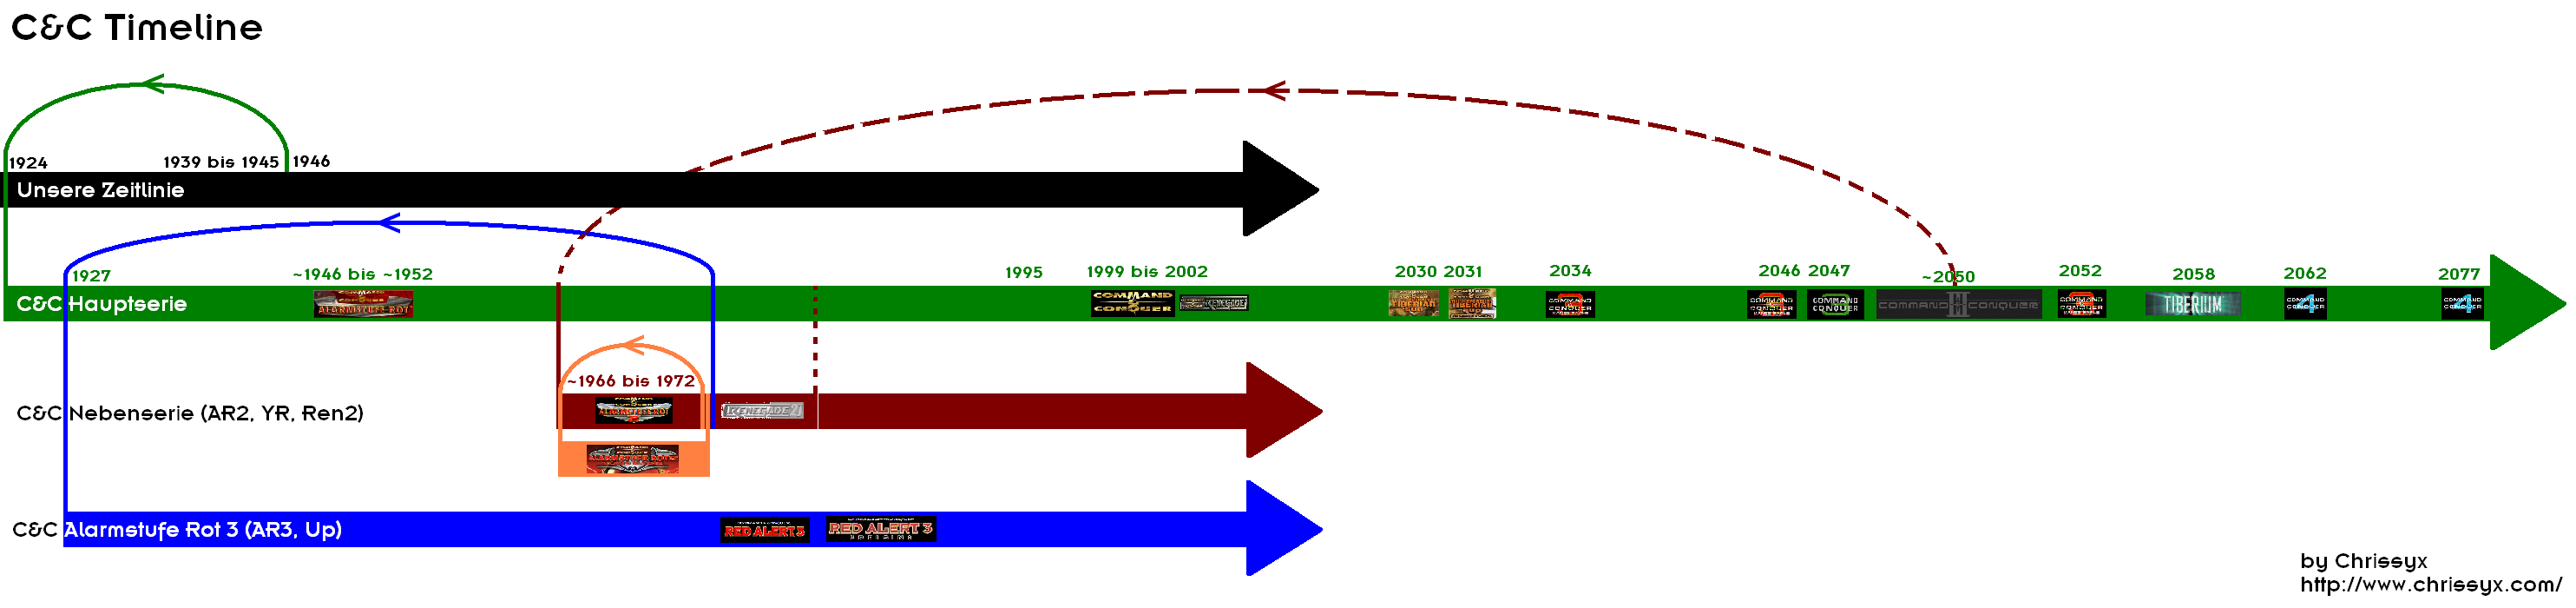 C&C Timeline